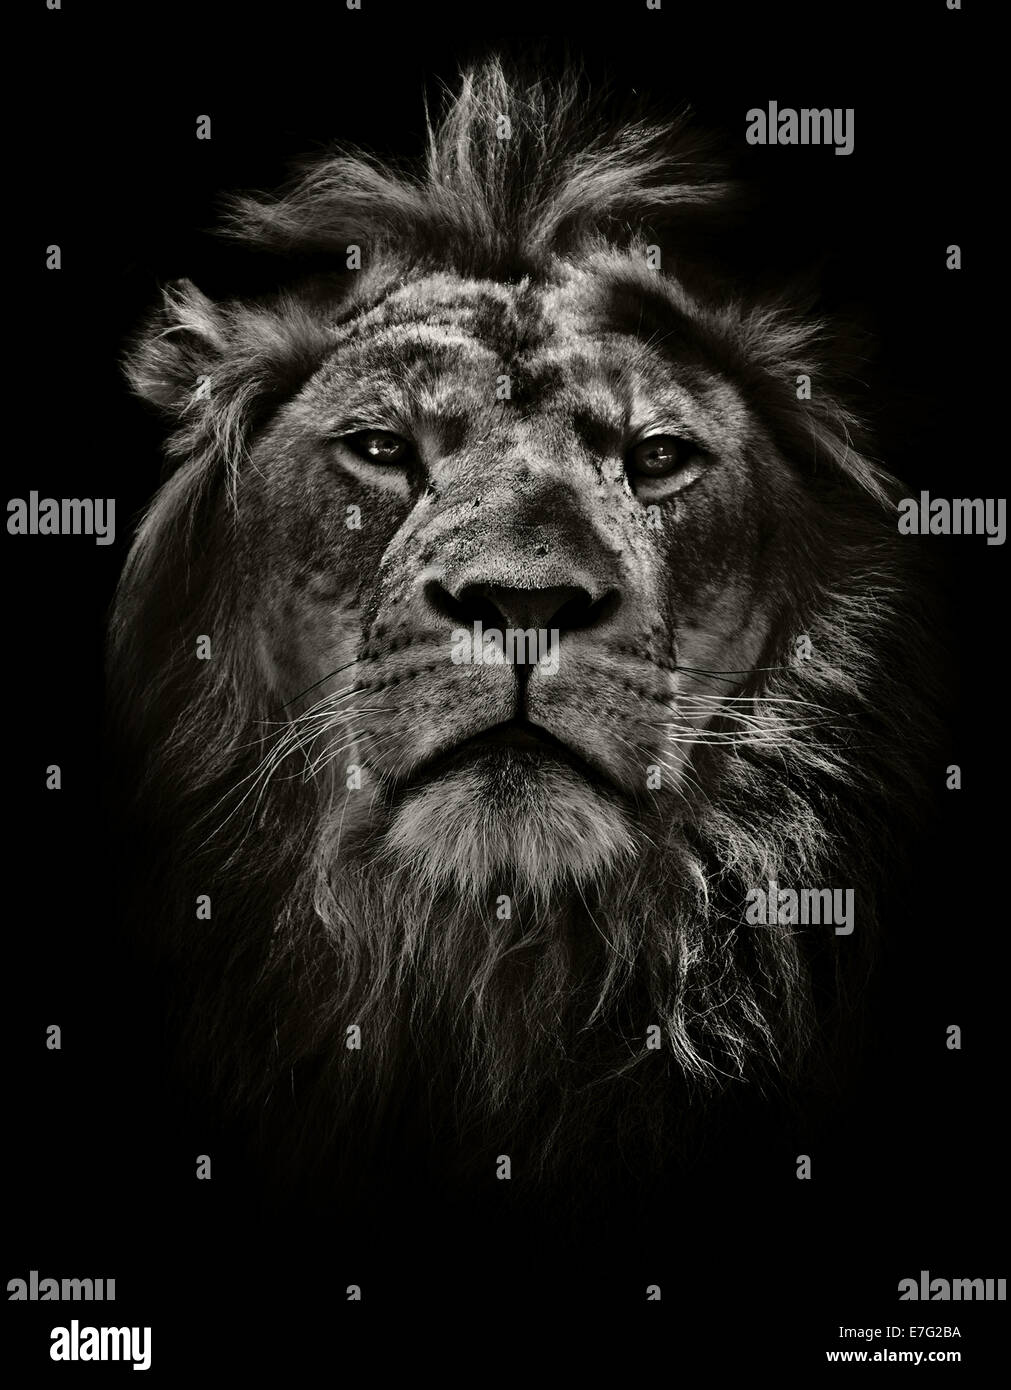 launische Löwen Porträt in schwarz / weiß Stockfoto